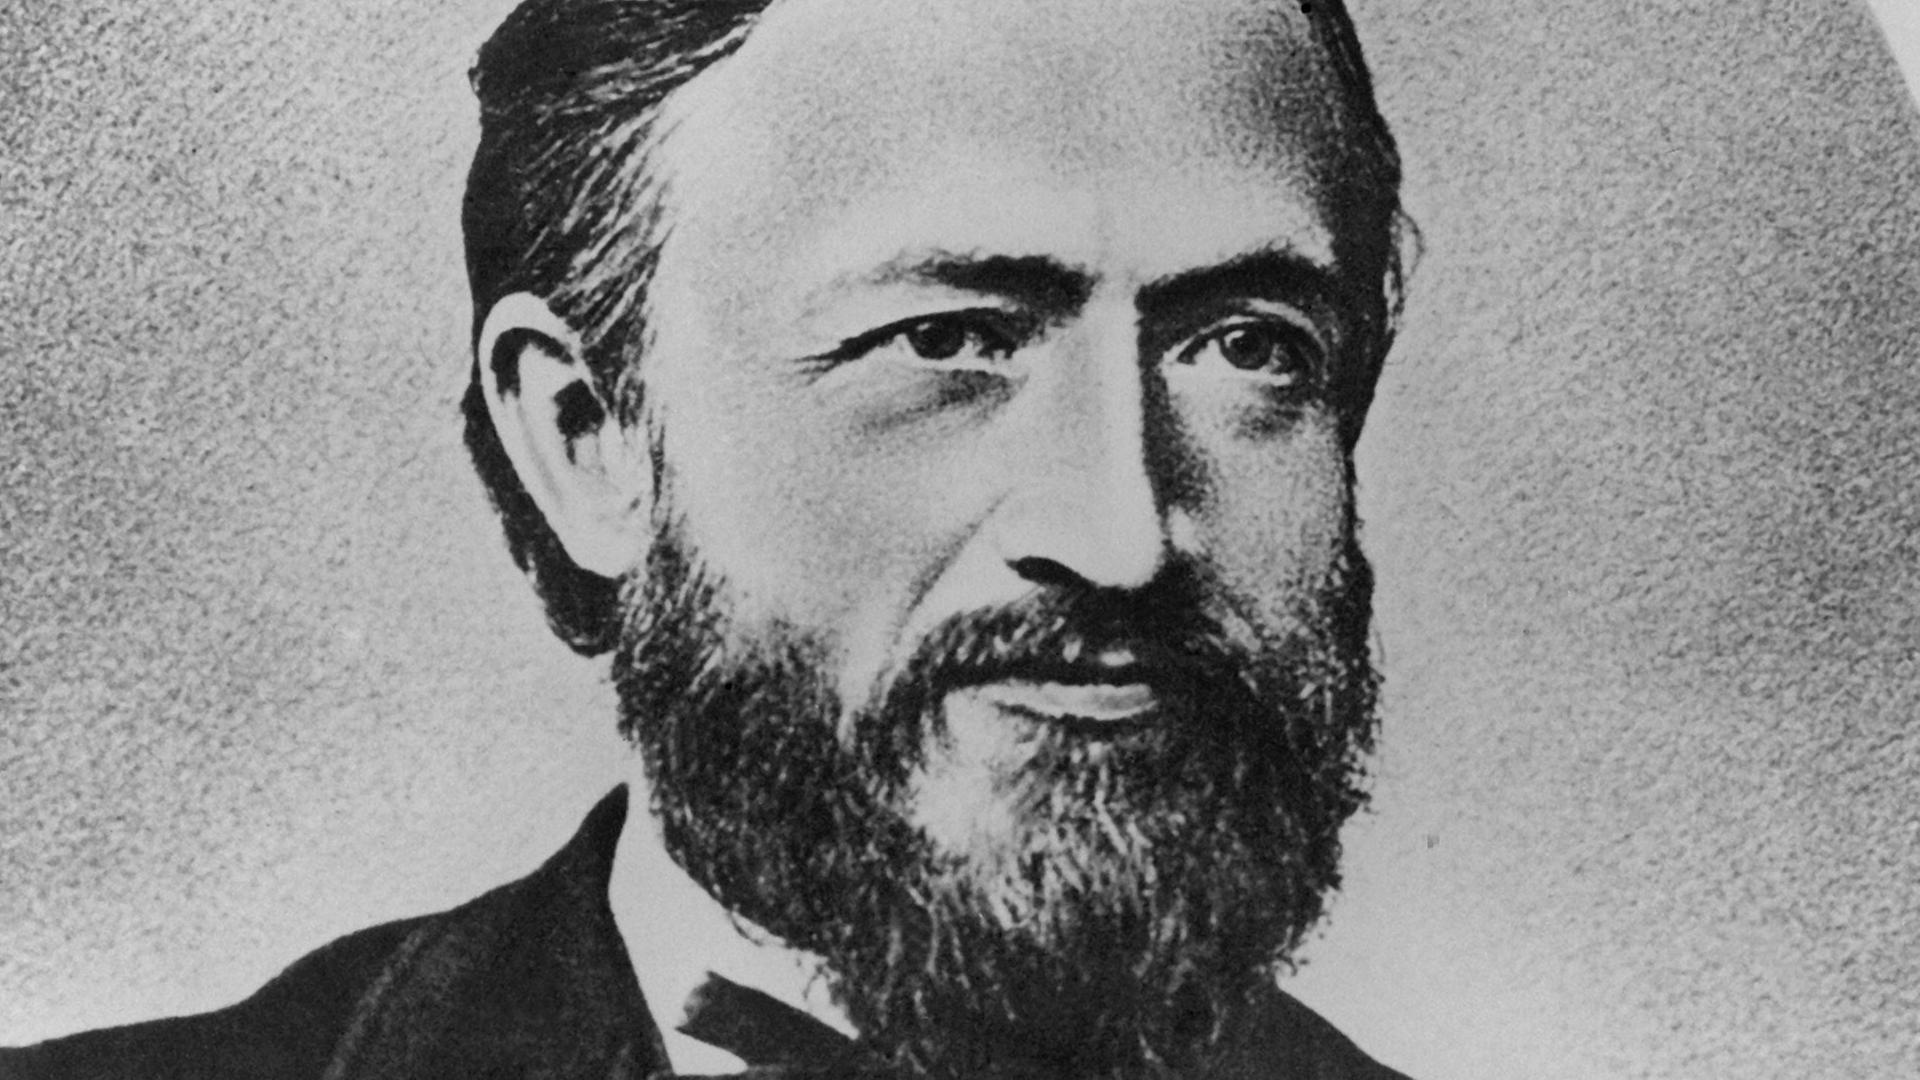 Zeitgenössische Darstellung von Johann Philipp Reis, dem Konstrukteur des ersten Geräts zur Tonübertragung mittels elektromagnetischer Wellen und damit des Telefons. Er wurde am 7. Januar 1834 geboren und ist am 14. Januar 1874 gestorben.